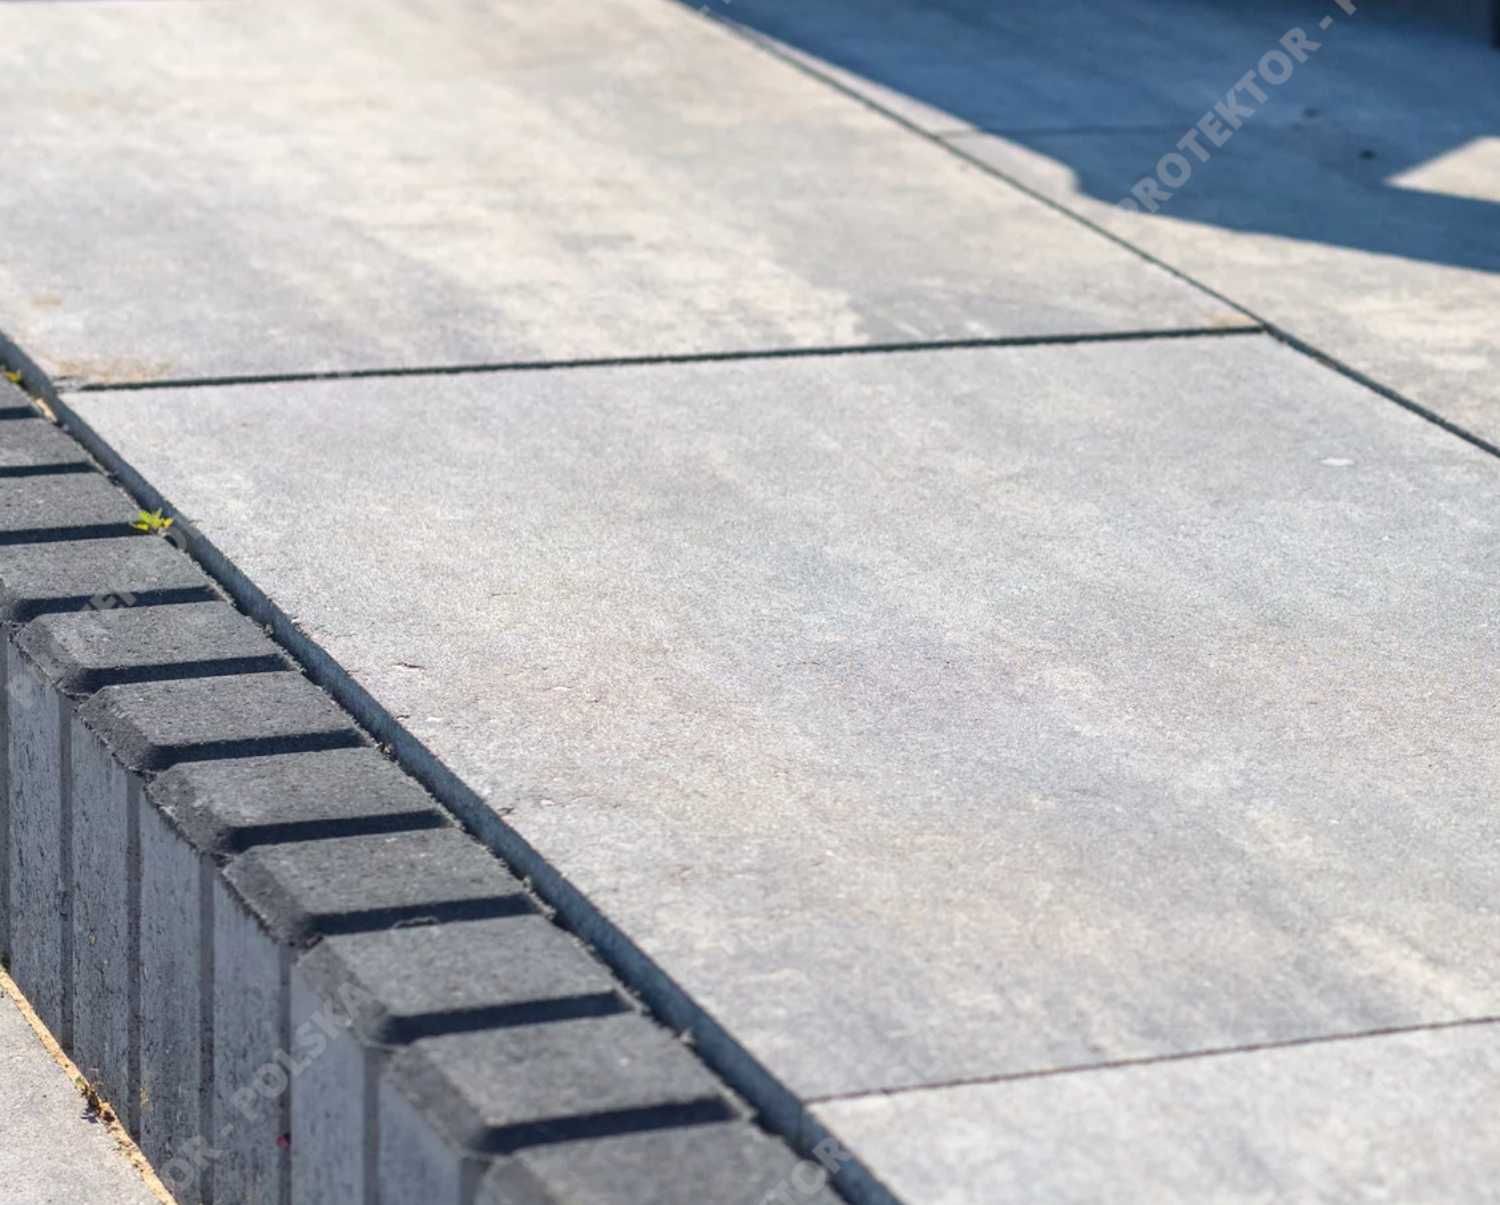 płyta tarasowa MAGNA Bruk brukowa betonowa chodnikowa kostka ścieżka